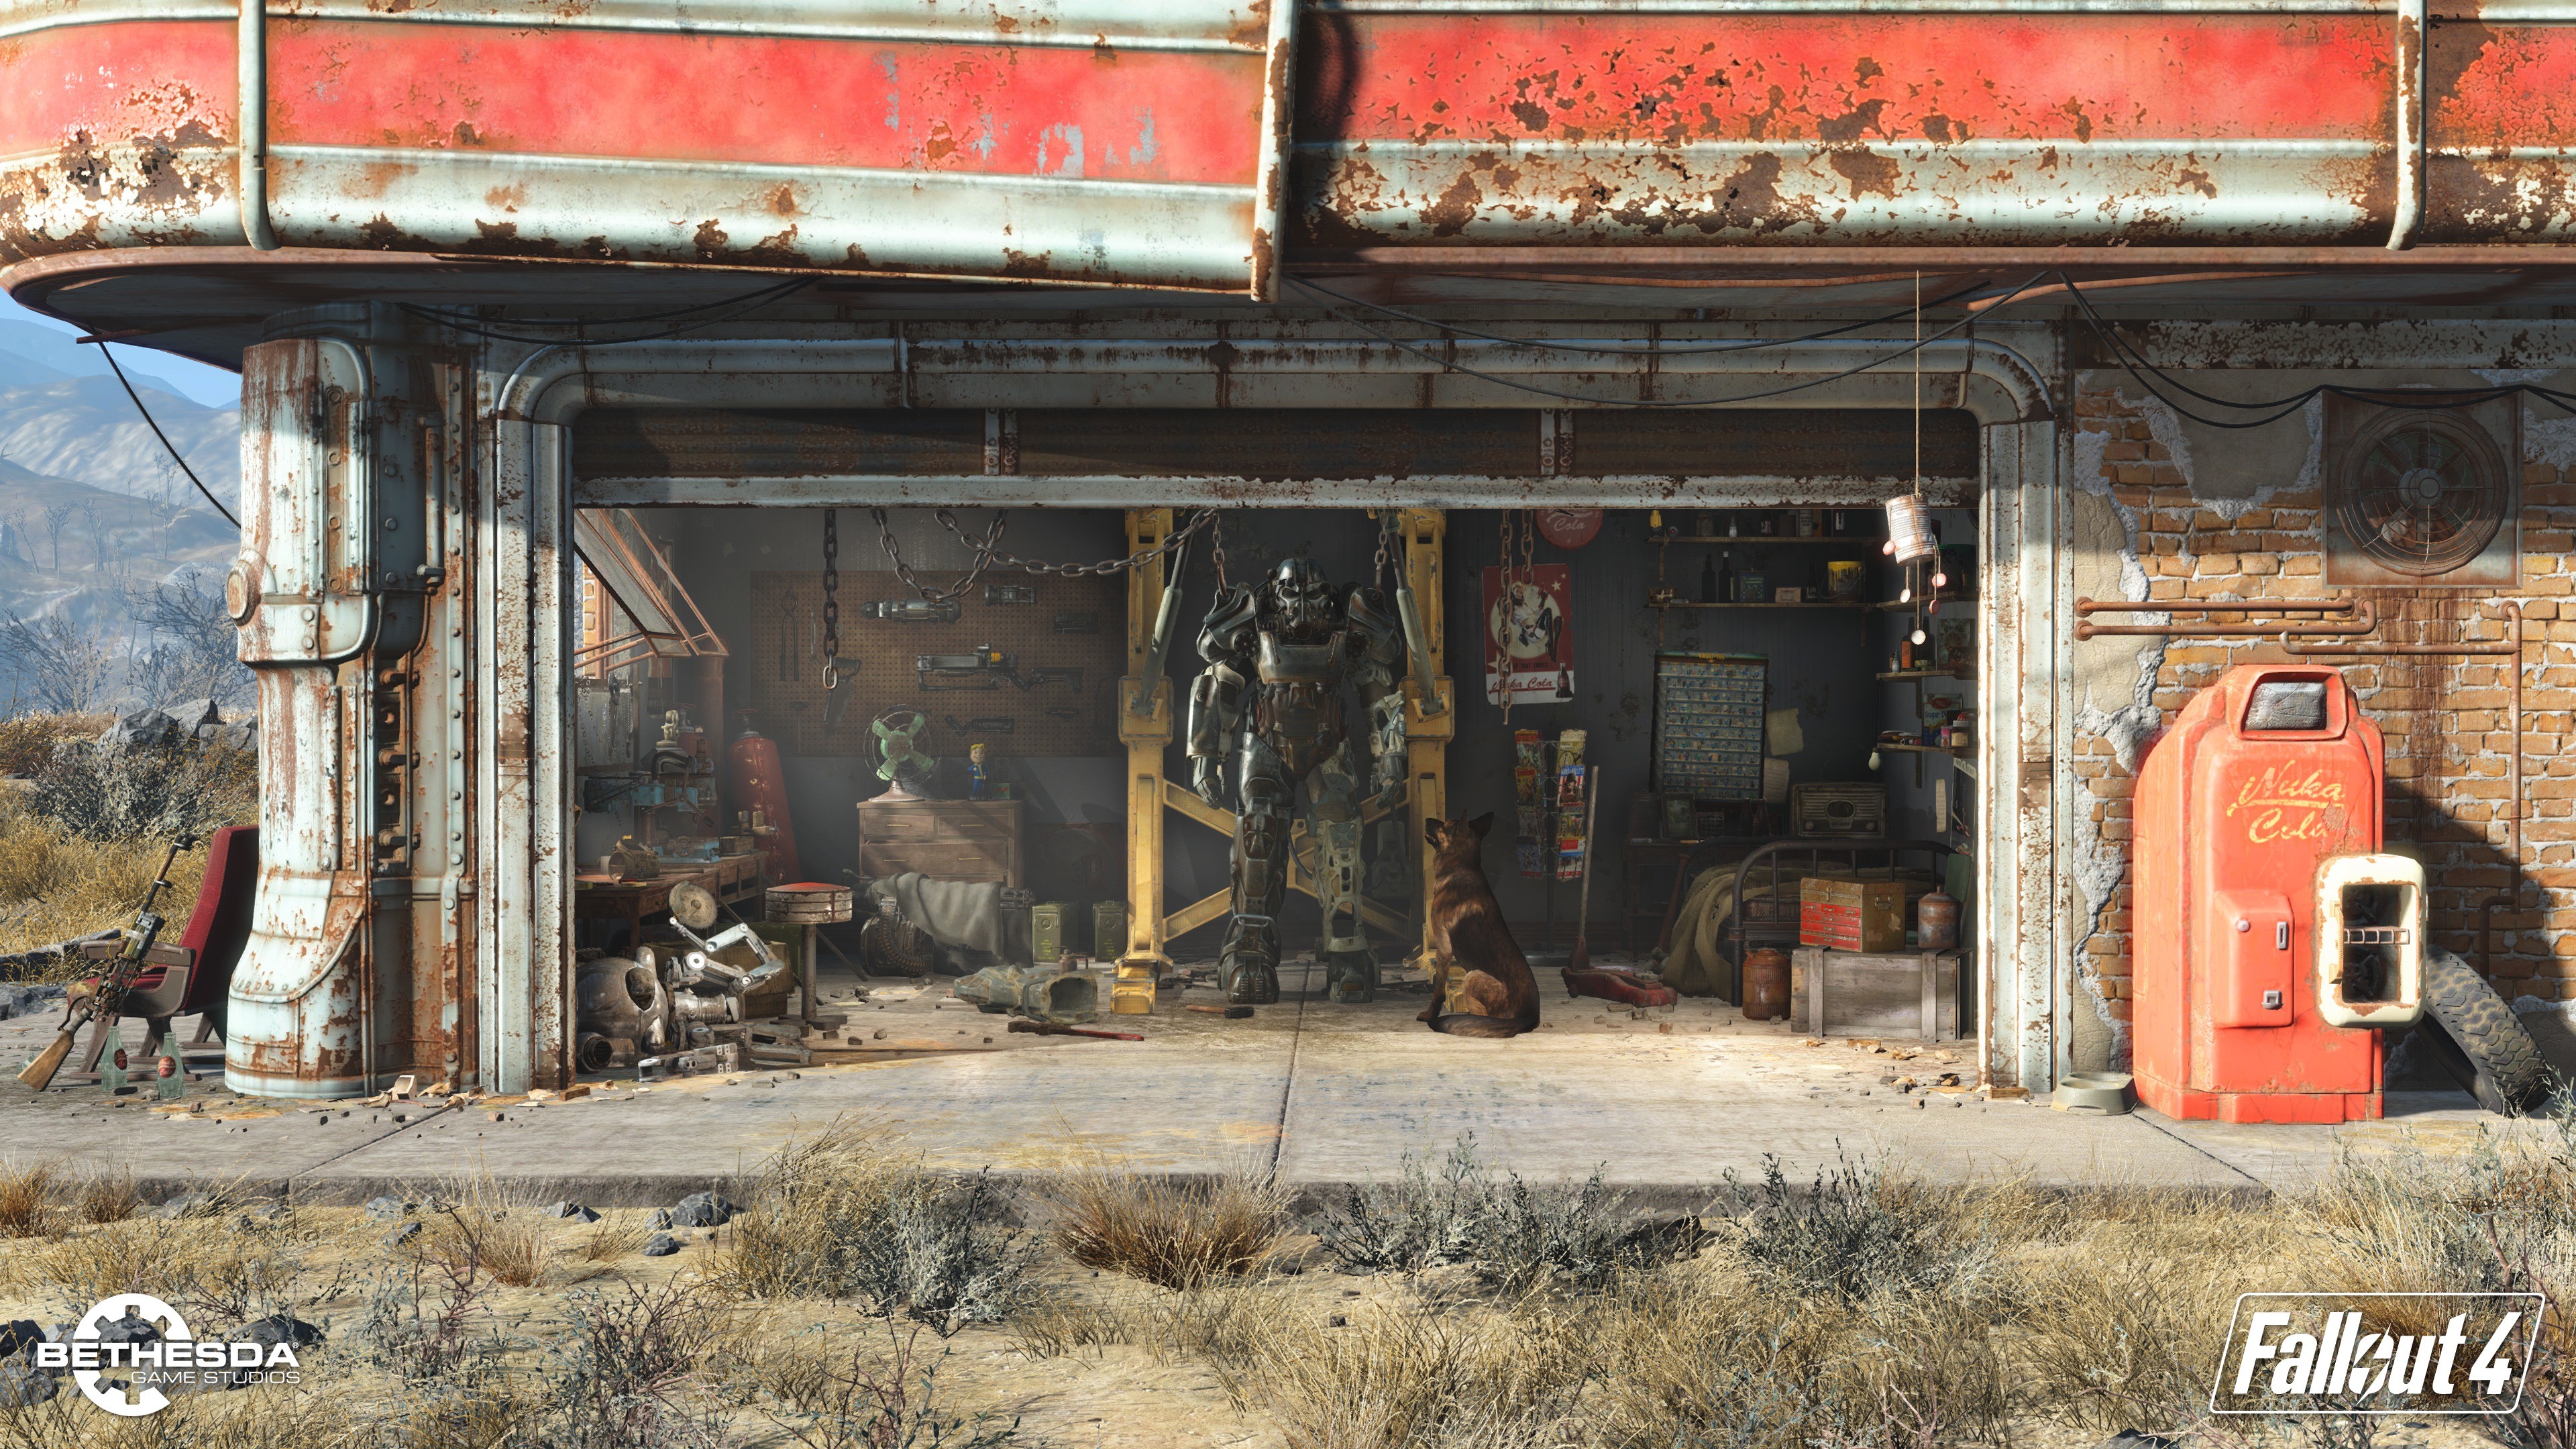 3840x2160 Fallout 4 Wallpaper